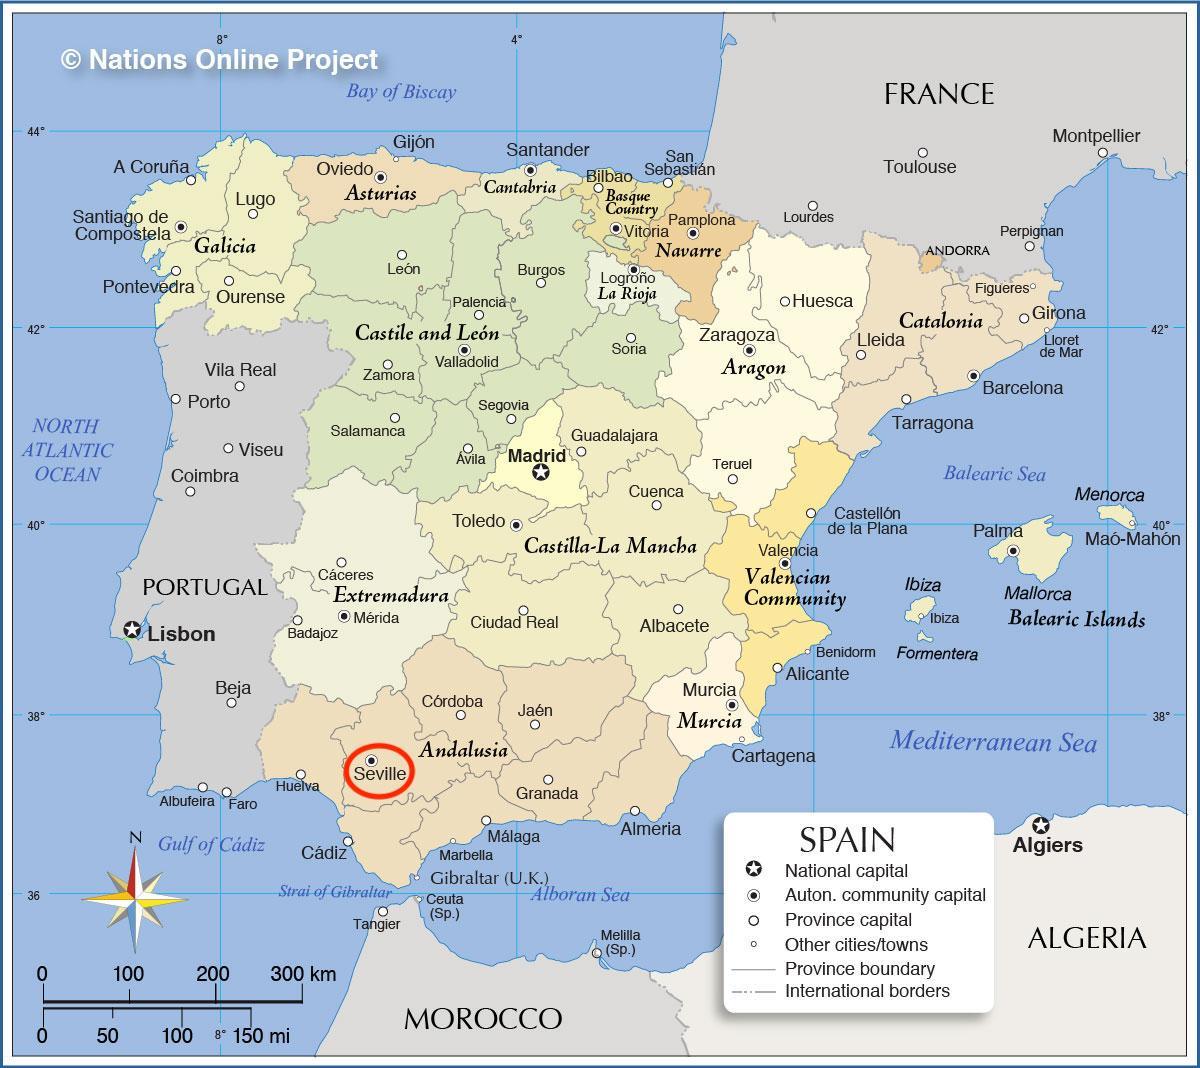 Seville on Spain map